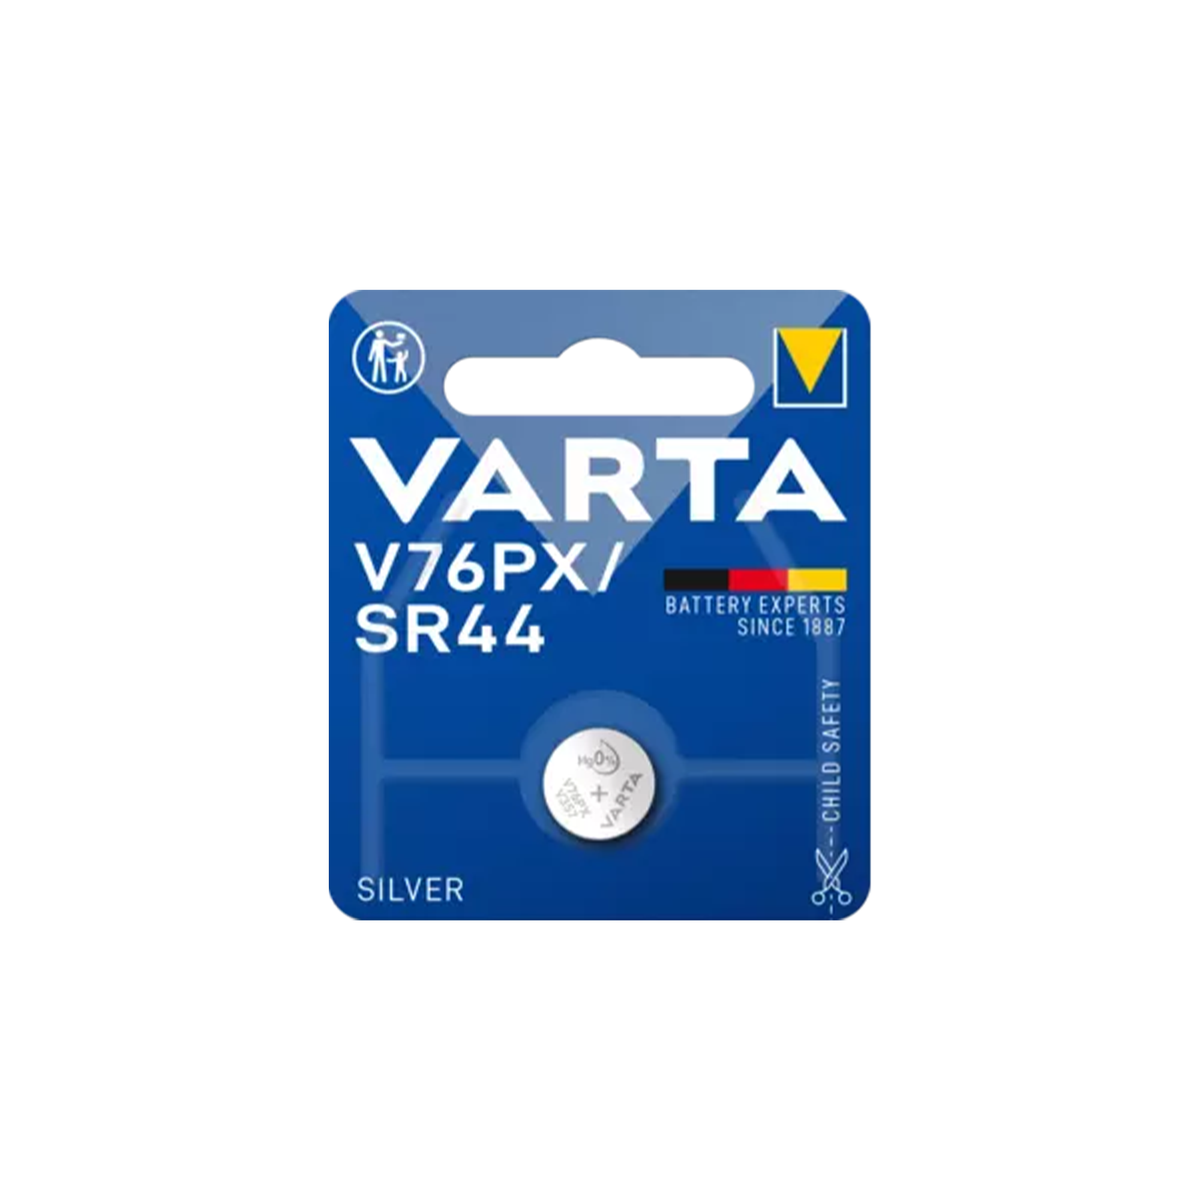 VARTA V76PX / SR44 1.55V Silver Coin Battery — Glazer's Camera